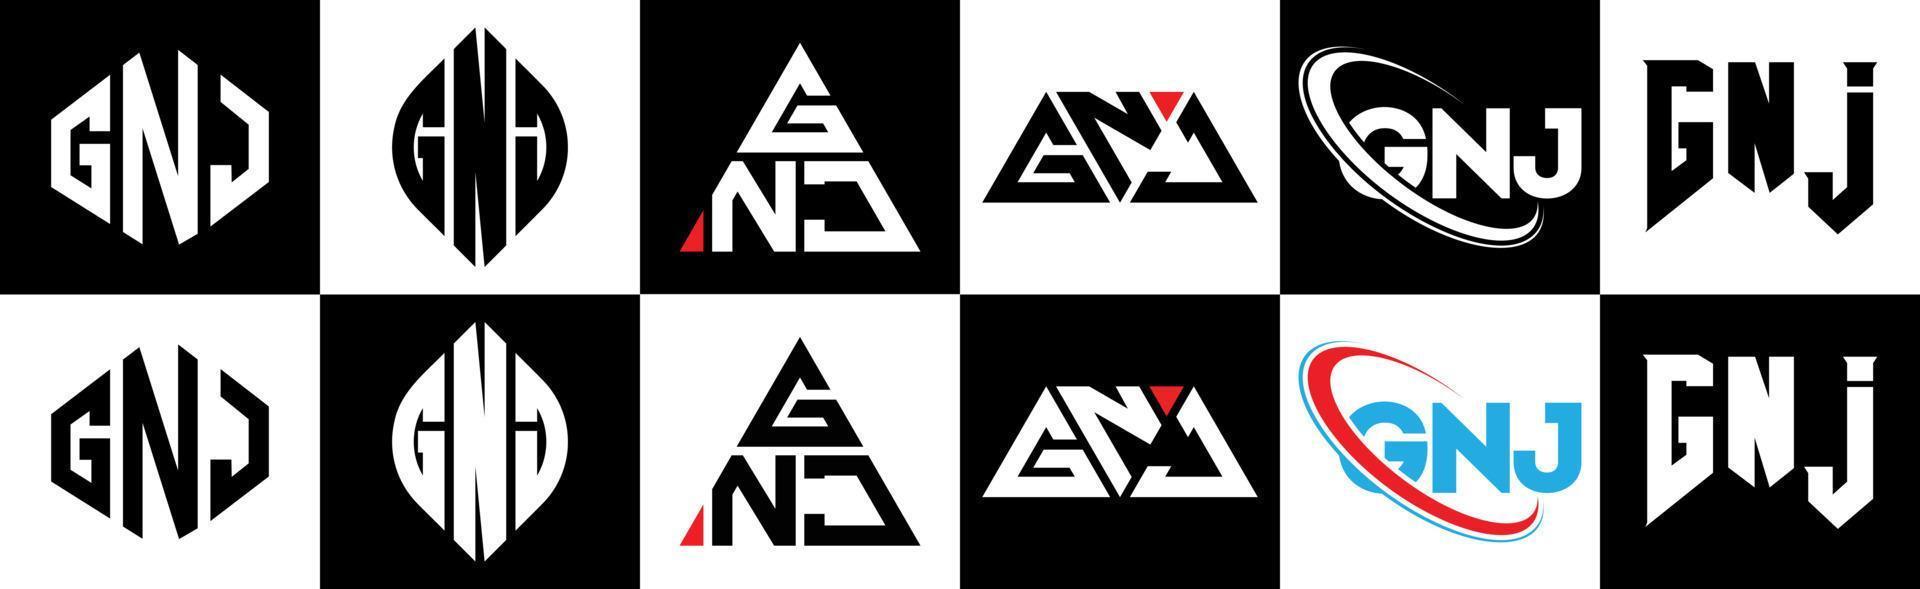 création de logo de lettre gnj en six styles. gnj polygone, cercle, triangle, hexagone, style plat et simple avec logo de lettre de variation de couleur noir et blanc dans un plan de travail. logo minimaliste et classique gnj vecteur